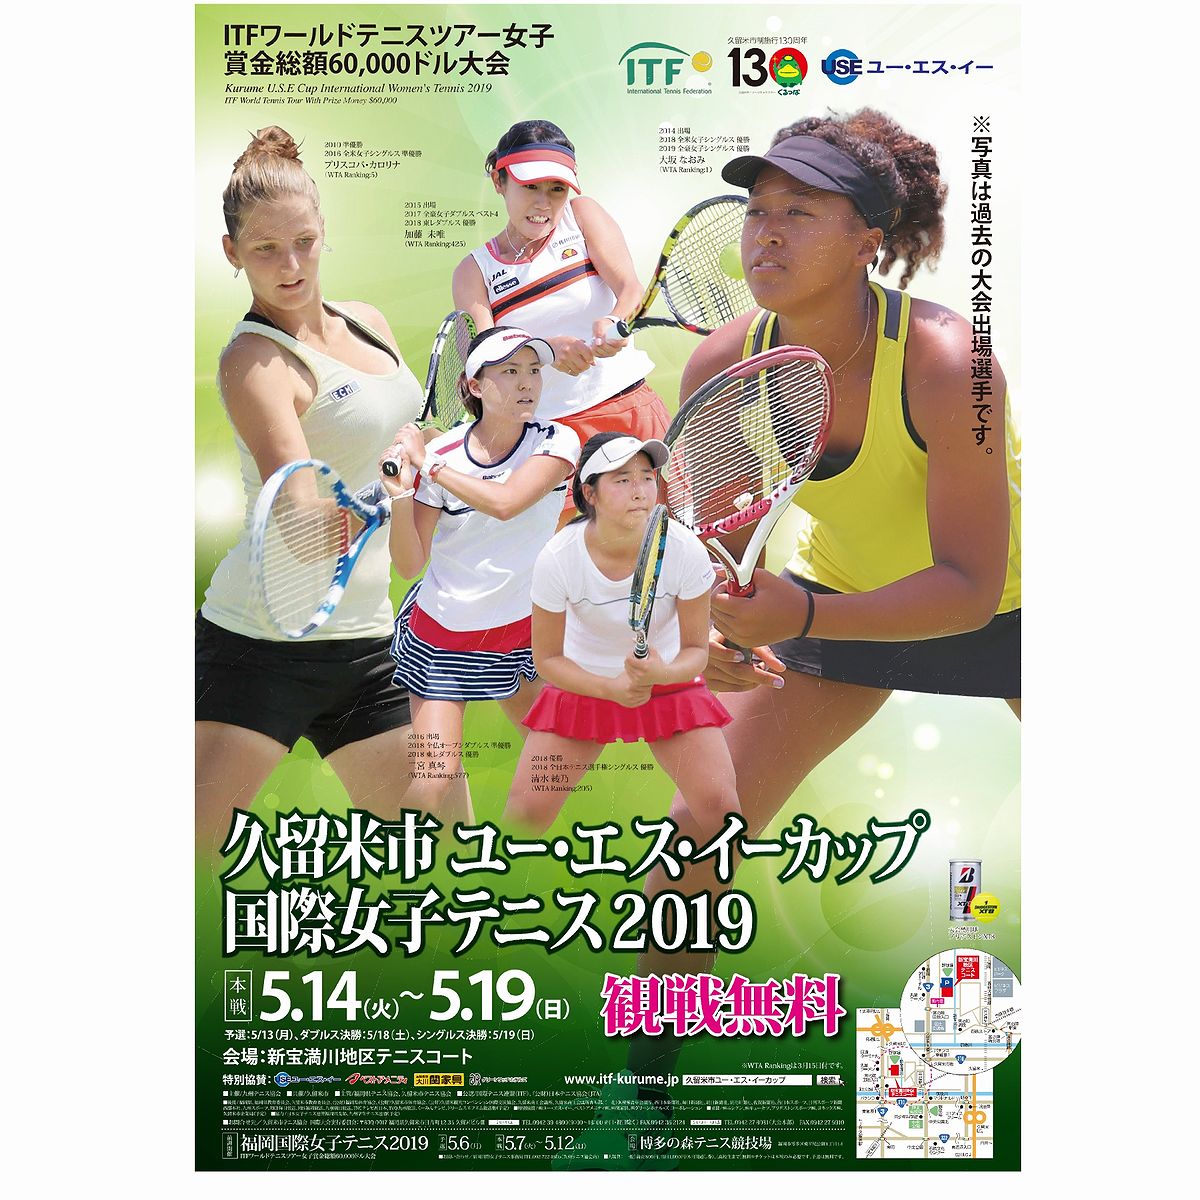 久留米国際女子テニス Itf Kurume Twitter